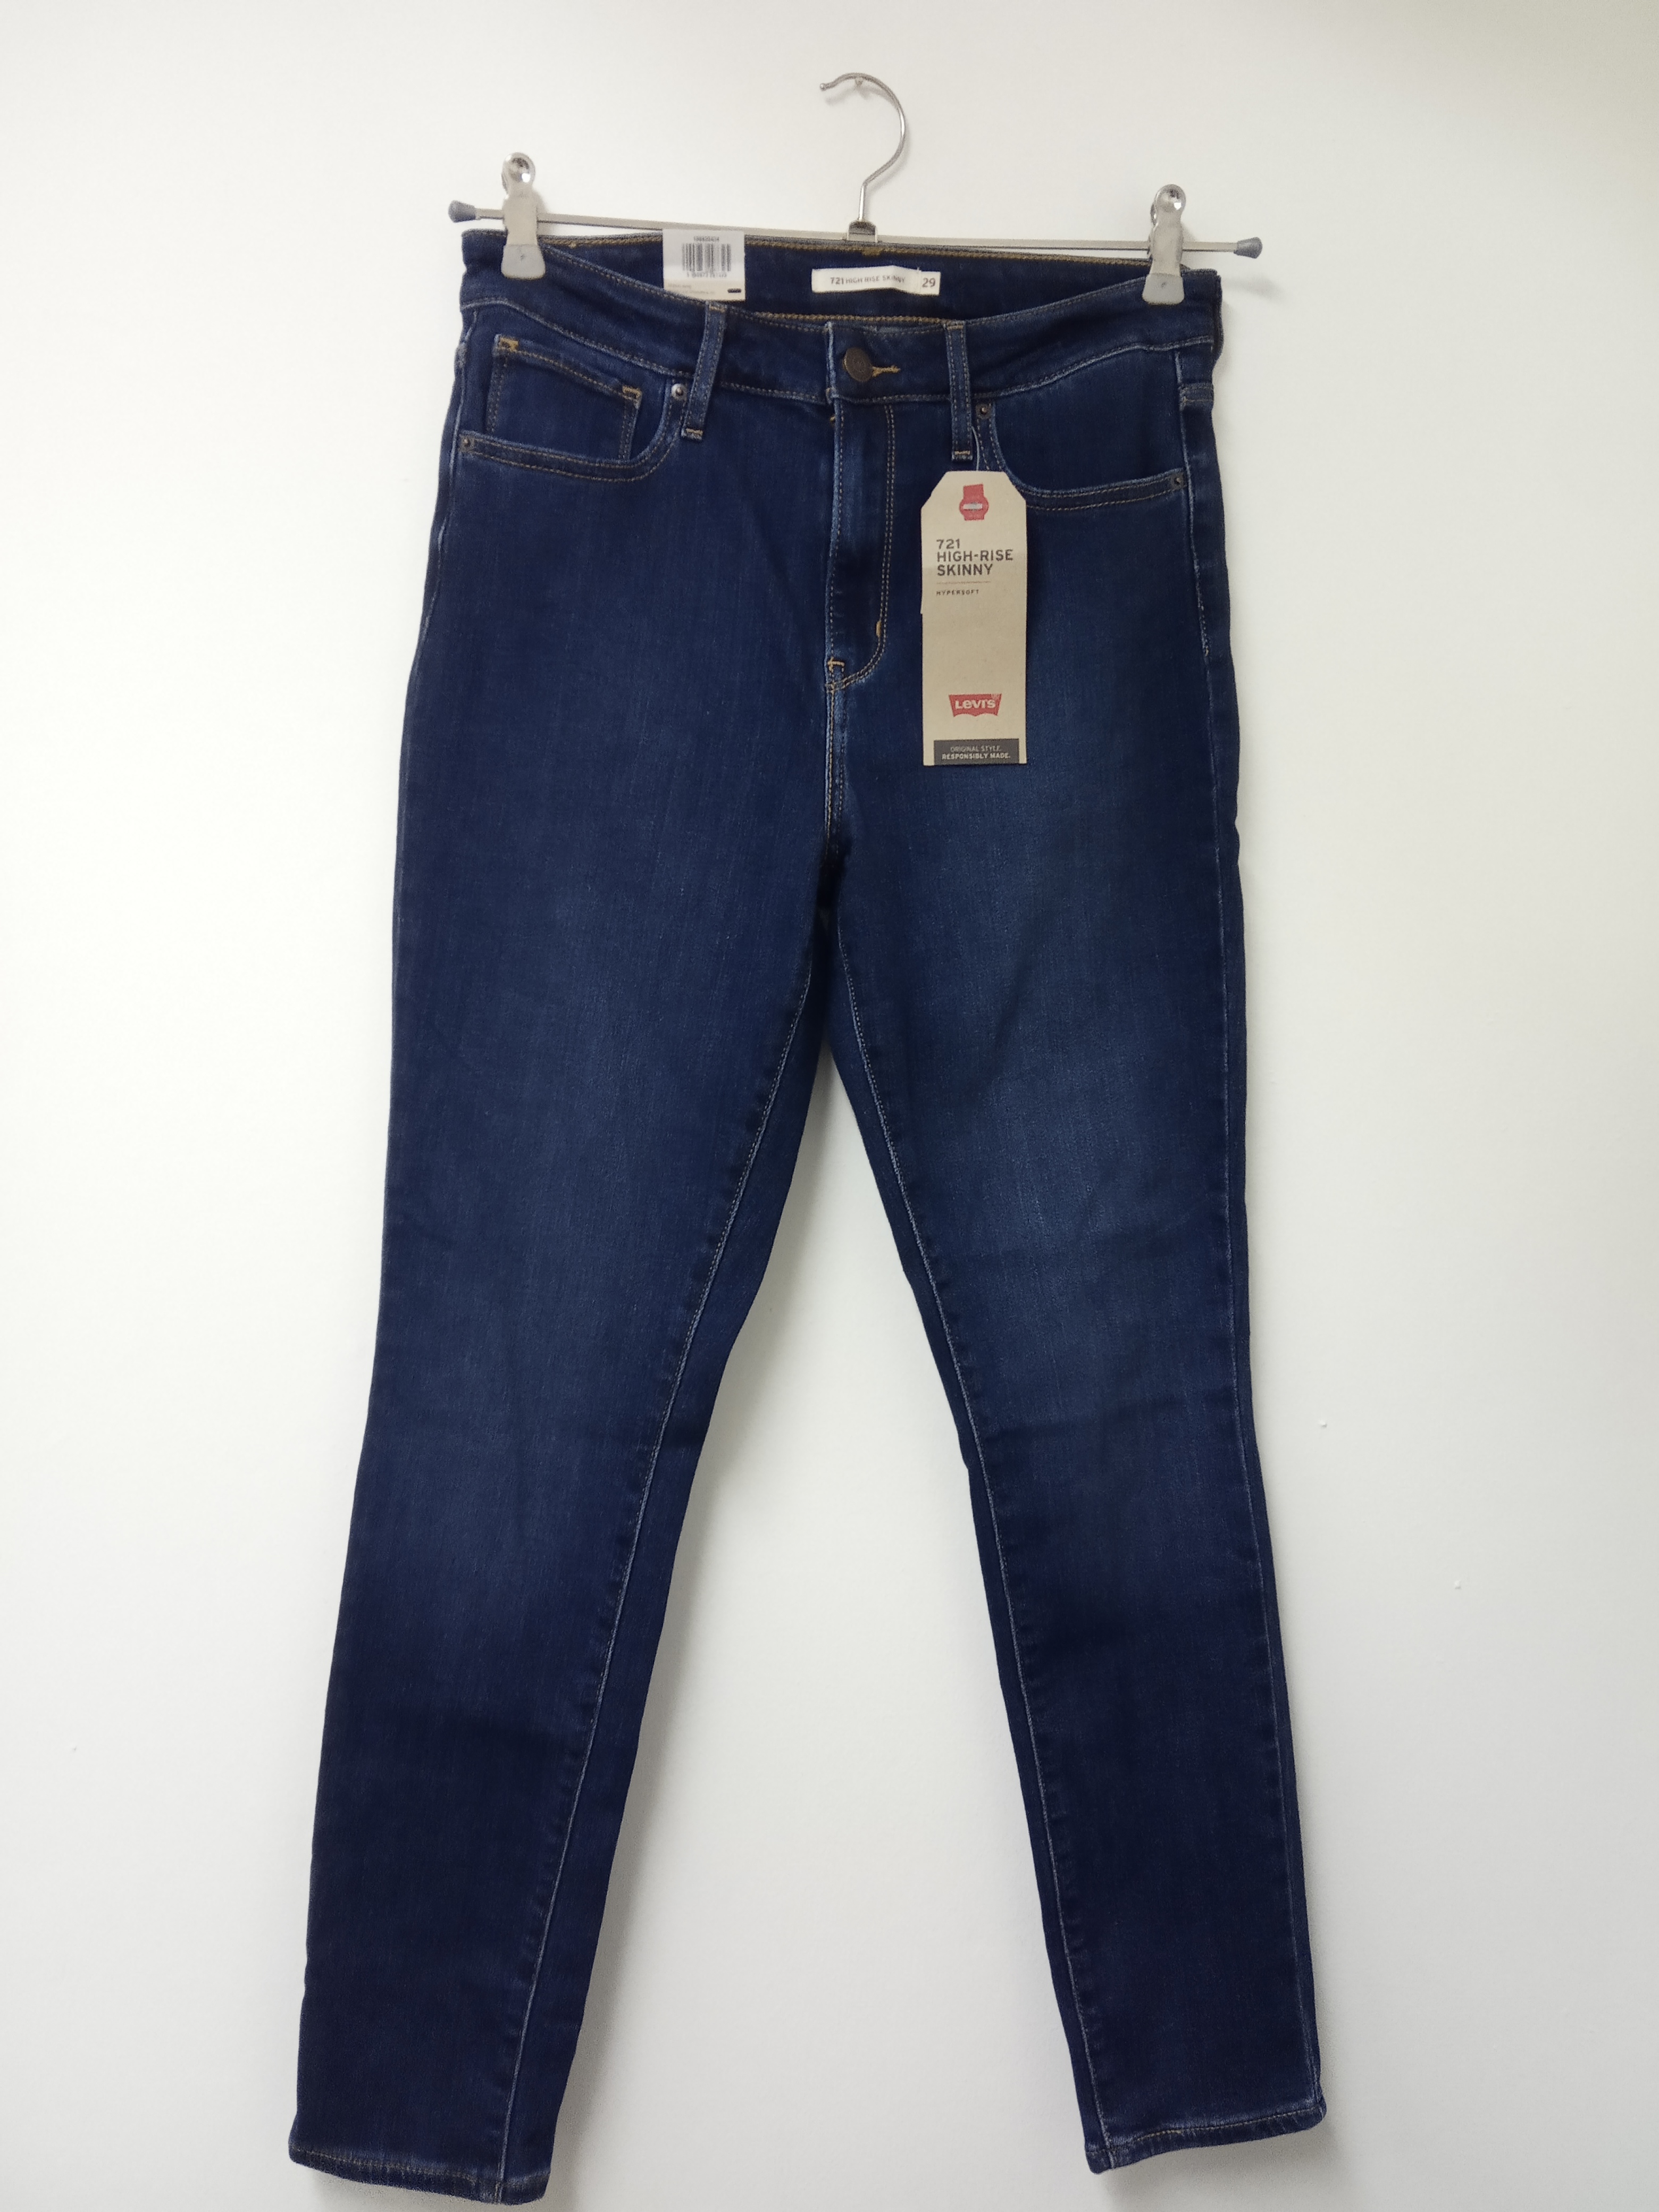 תמונה 1 ,ג'ינס ליווייס מידה 29 חדש למכירה בתל אביב ביגוד ואביזרים  ג'ינסים ומכנסיים